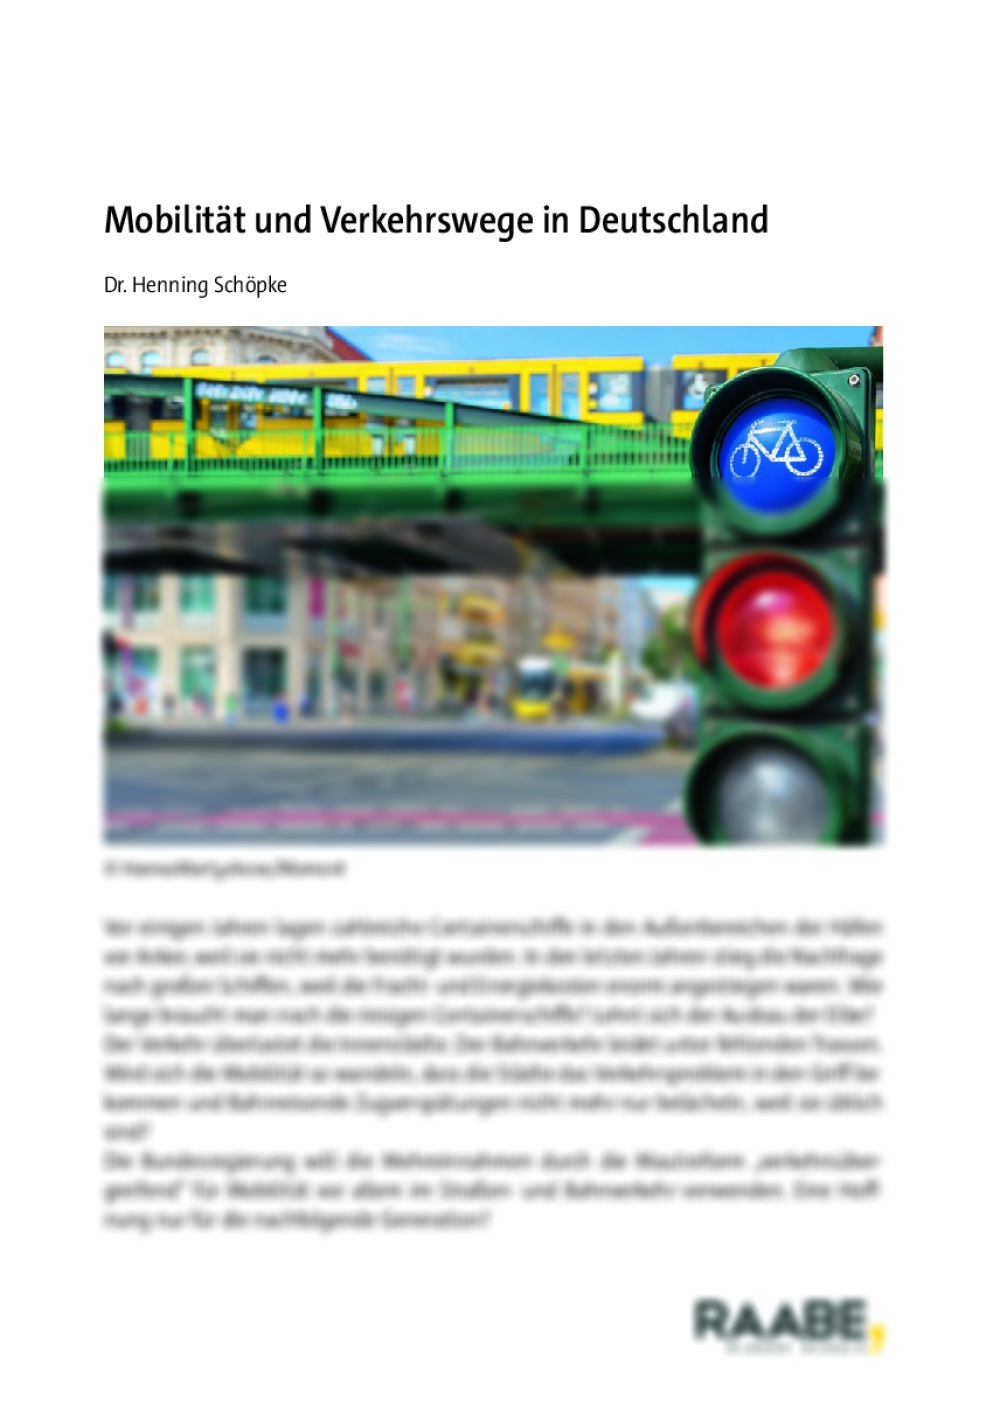 Mobilität und Verkehrswege in Deutschland - Seite 1